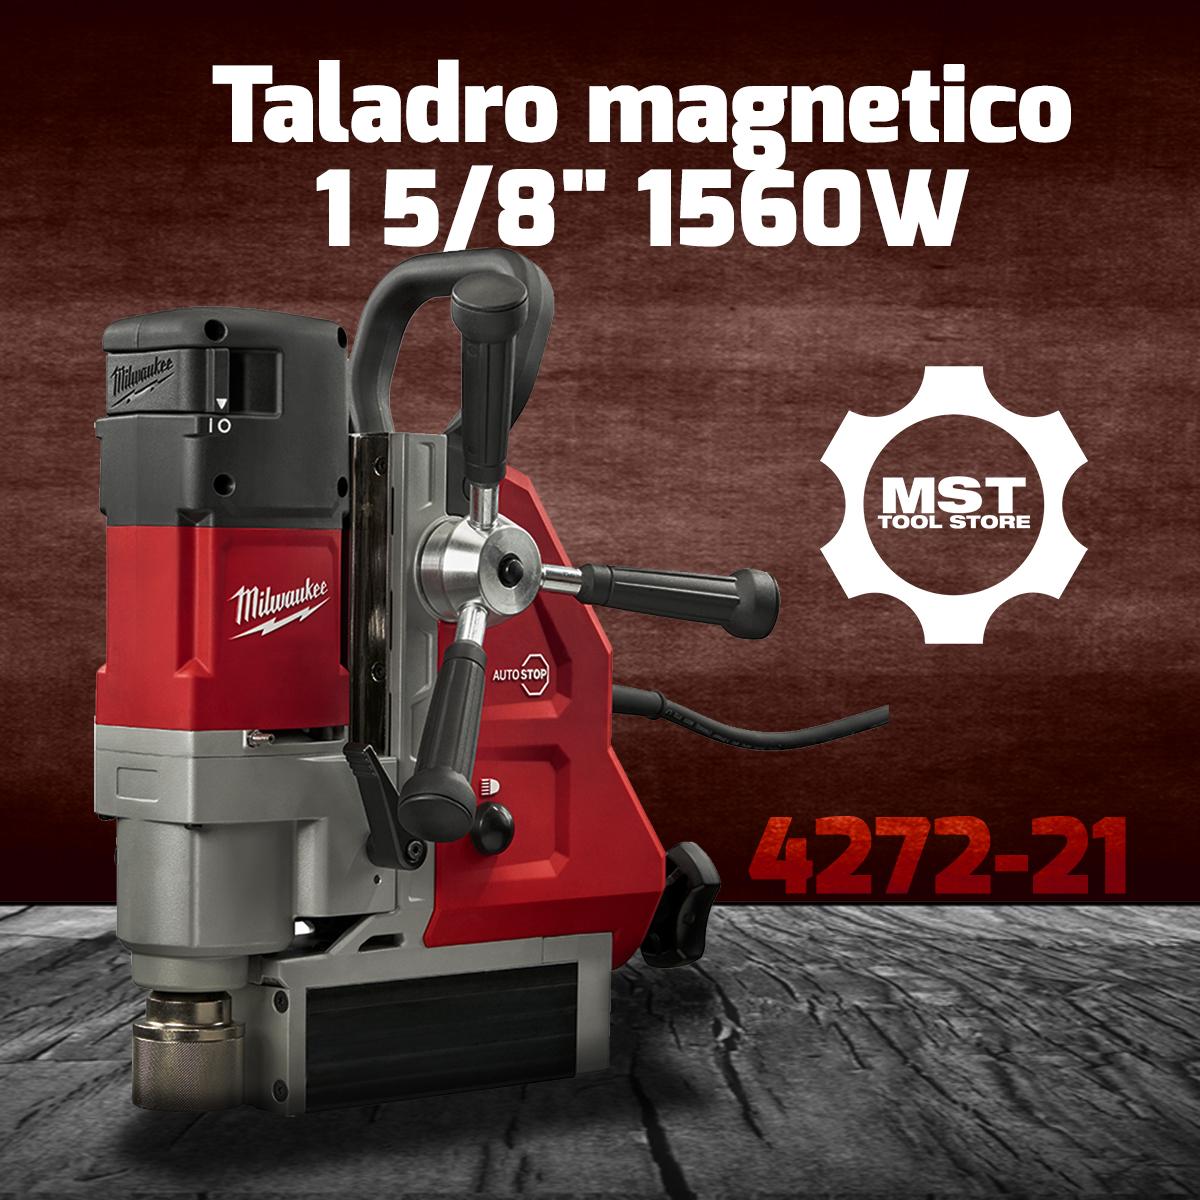 MILWAUKEE 4272-21 Taladro magnetico 1 5/8" 1560W